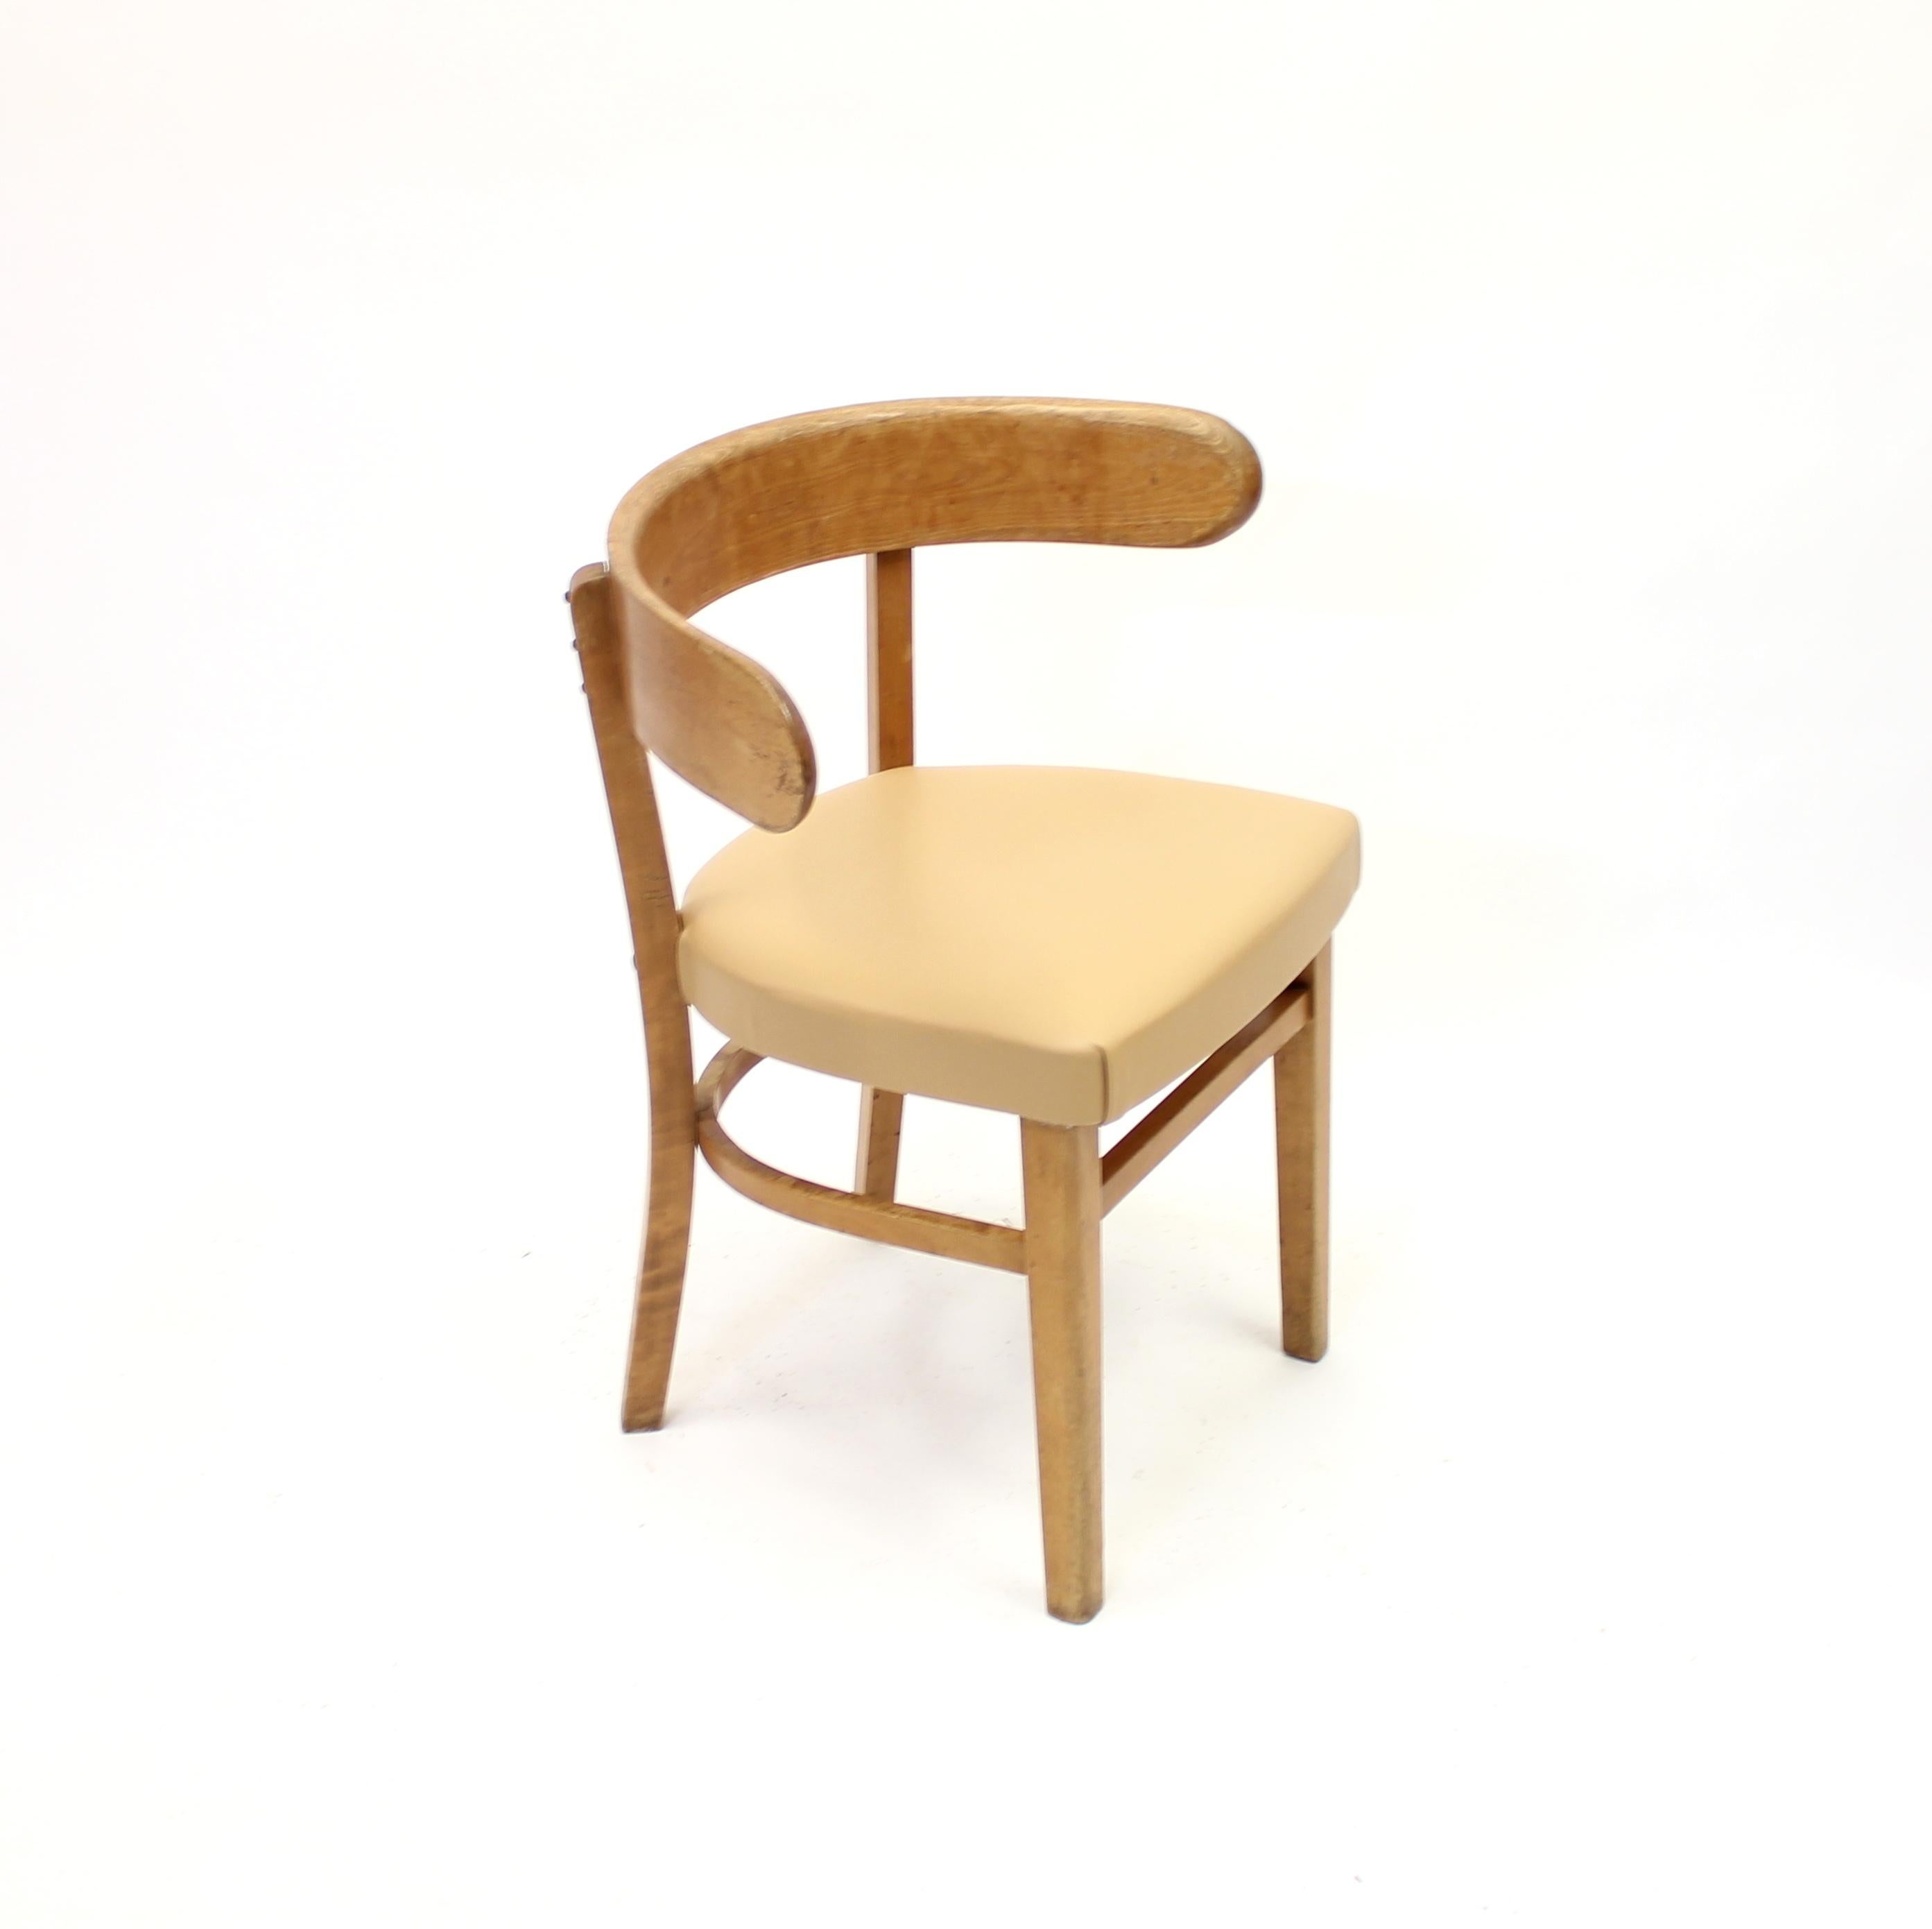 Mid-20th Century Werner West, Hugging Chair, Wilhelm Schauman Ltd, 1940s